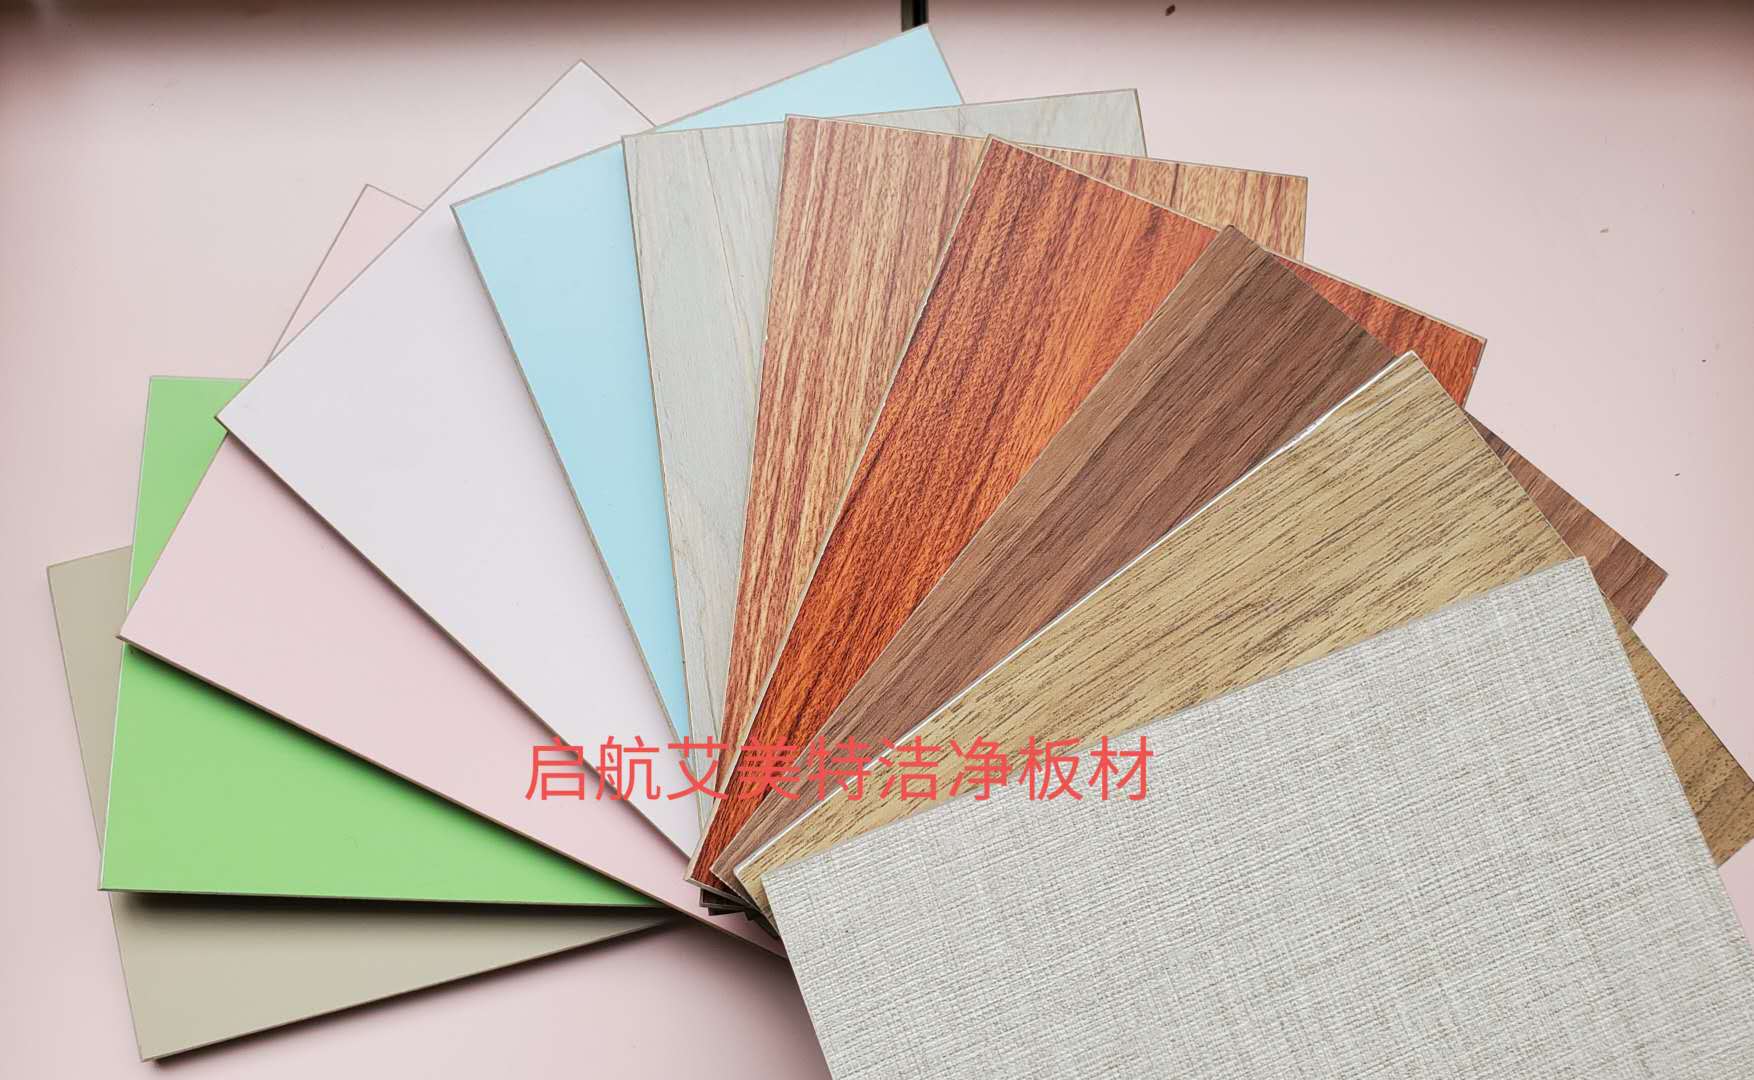 铝板铝塑板翻新改色北京上海重庆天津铝镁锰板保温装饰一体板翻新改色